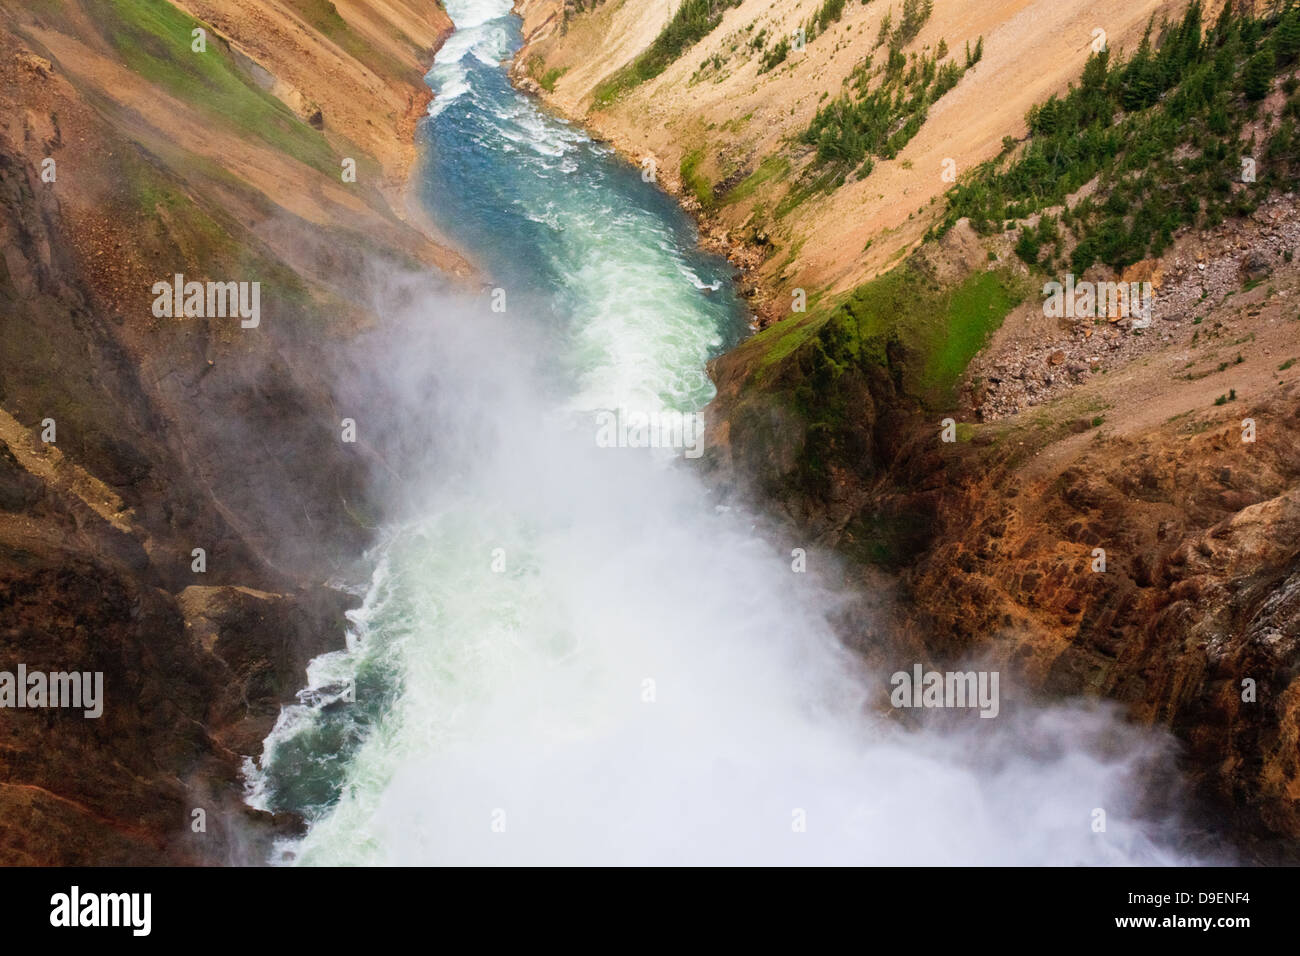 La brume s'élève de bord de Lower Falls en passant par la rivière Yellowstone Grand Canyon de Yellowstone Banque D'Images